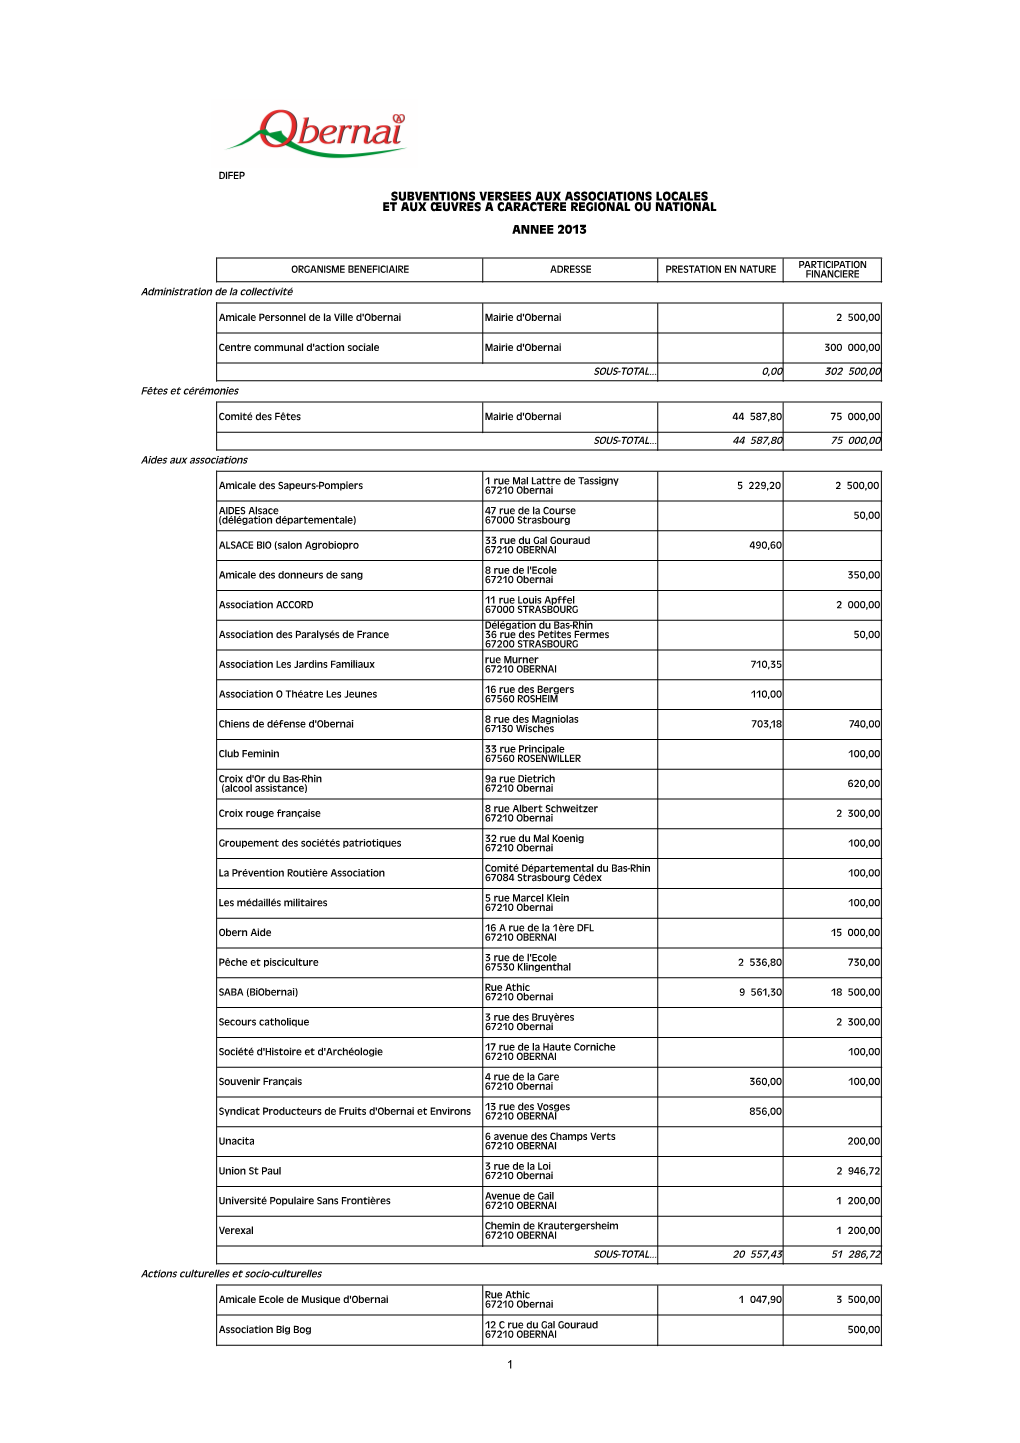 Liste Annuelle Des Subventions Versées En 2013